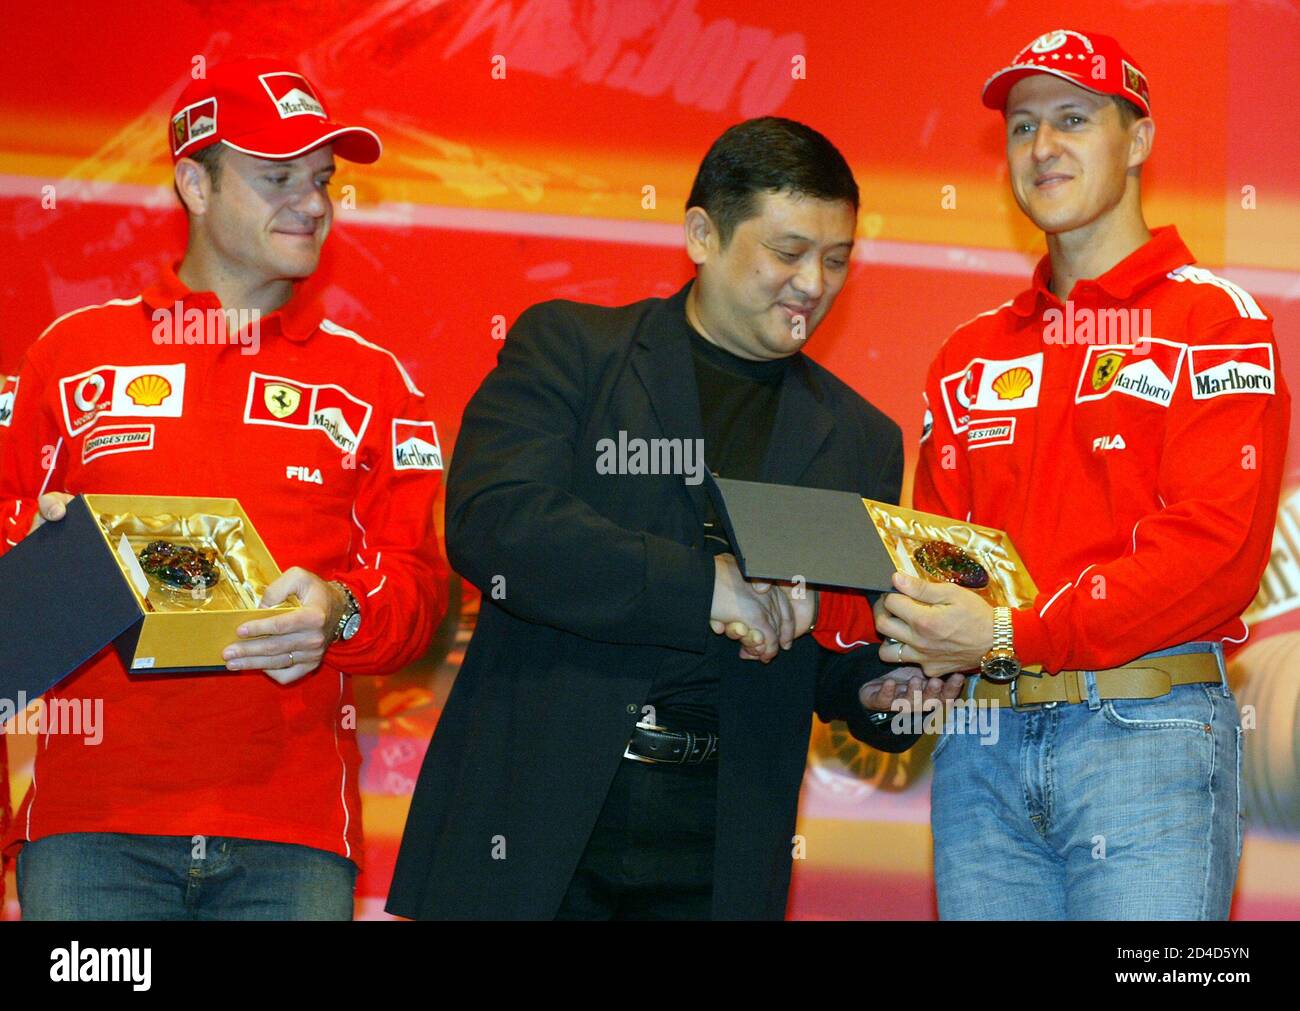 Michael Schumacher (R), siete veces campeón de Fórmula uno de Ferrari, recibe un regalo de Yu Zhifei, Director General Adjunto del circuito de Shanghai, como su compañero Rubens Barrichello (L) se ocupa después de una conferencia de prensa en Shanghai el 22 de septiembre de 2004. Shanghai será la sede del primer Gran Premio de China el 26 de septiembre con un circuito impresionante y una multitud de altrueque de al menos 150,000, Uno de los dos primeros grandes premios de este año - el otro fue la primera carrera de Bahrein en Oriente Medio - que permiten a la Fórmula uno presumir de ser un campeonato verdaderamente global. REUTERS/claro Cortes IV CC/SH Foto de stock